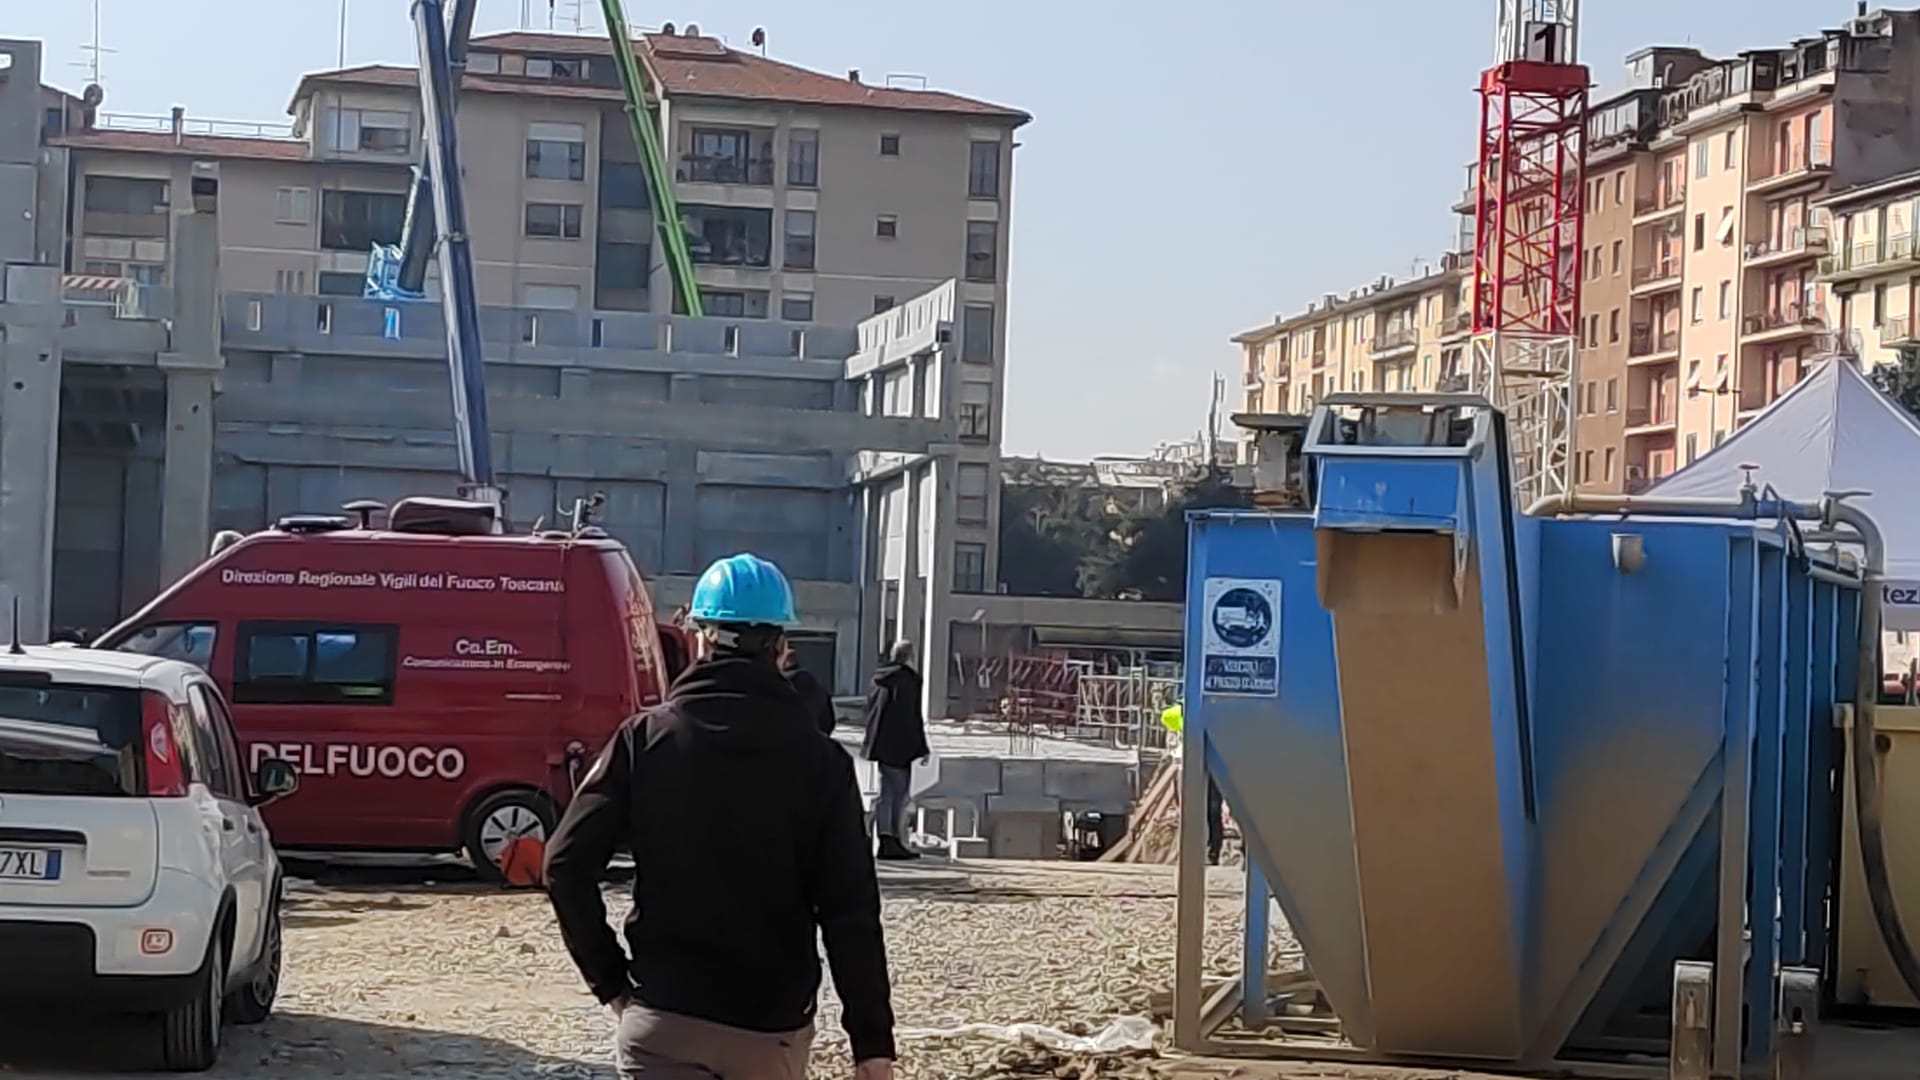 🎧 Crollo Firenze: proseguono ricerche ultimo operaio, pm torna in cantiere